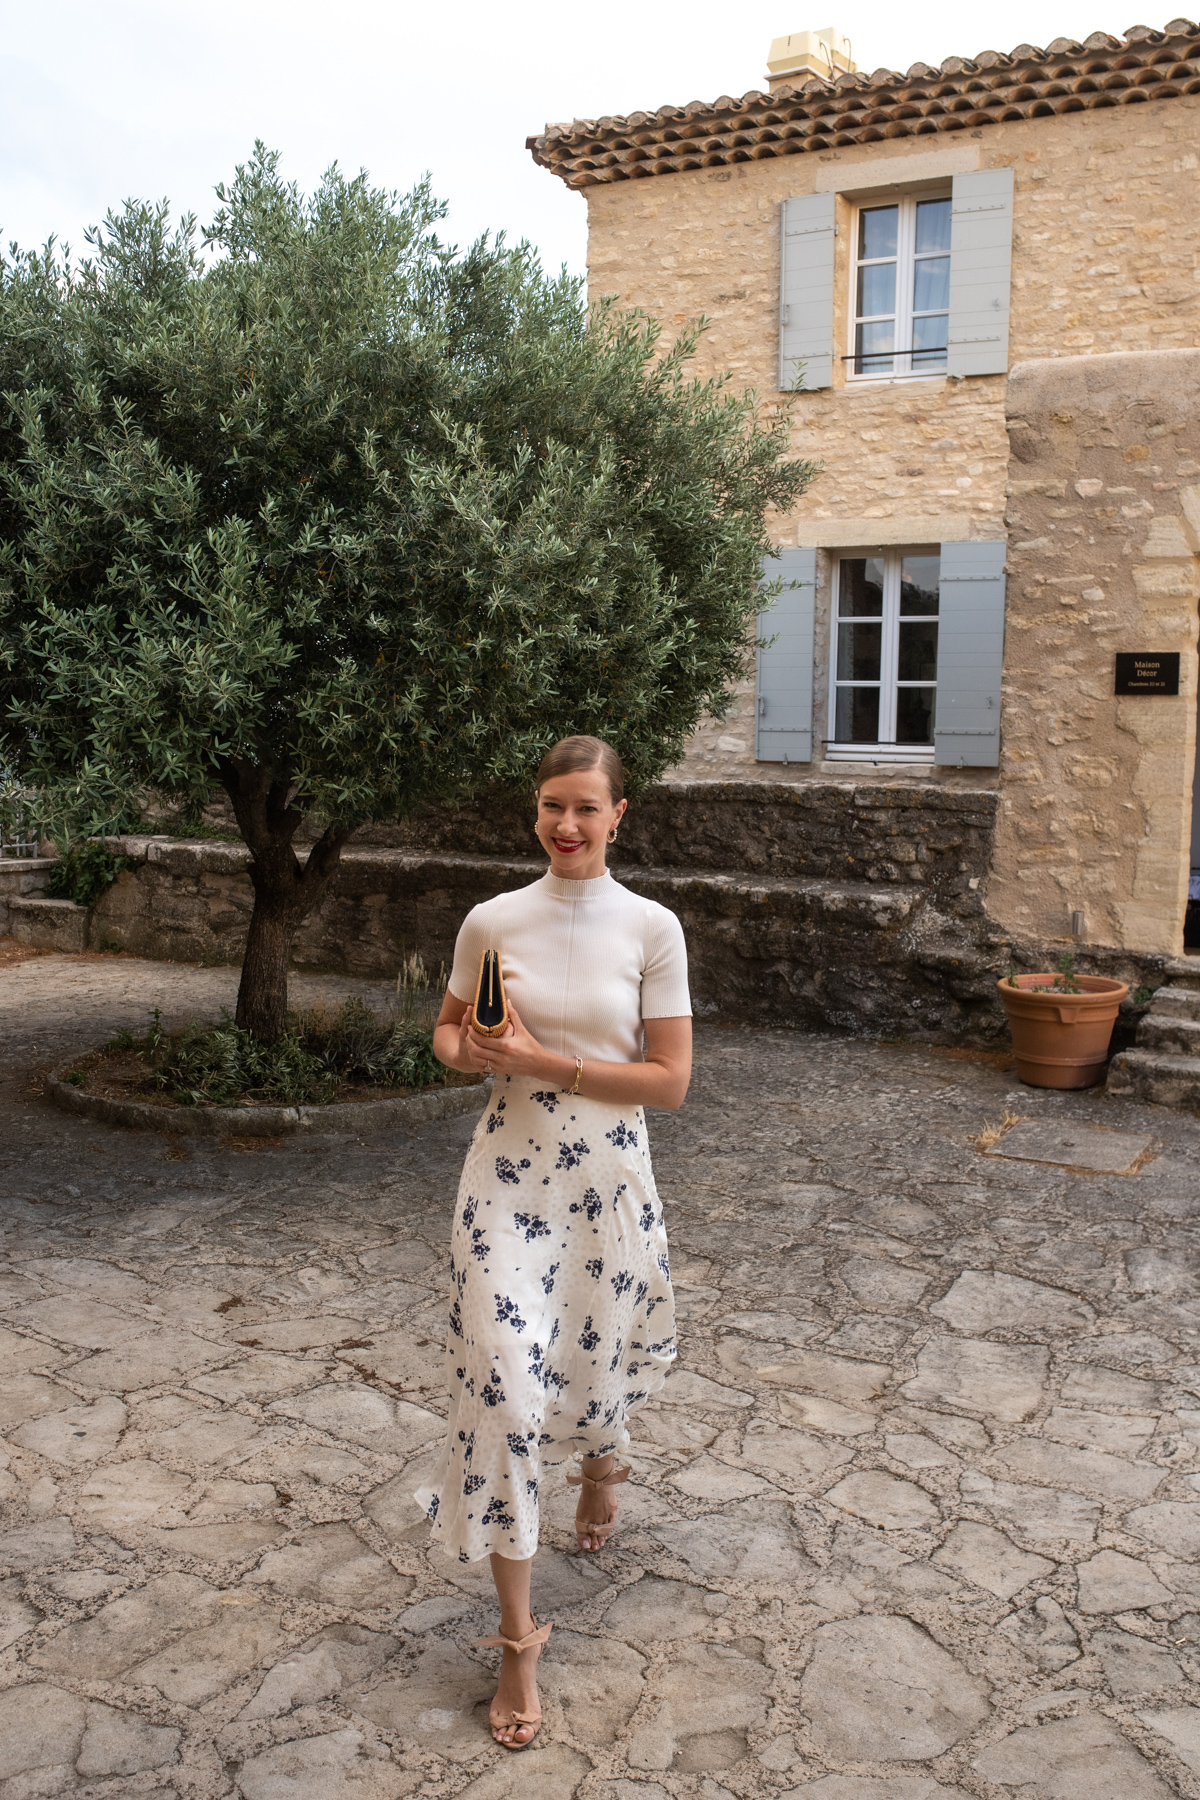 Stacie Flinner x Crillon Le Brave Best Hotels in Provence France-1.jpg